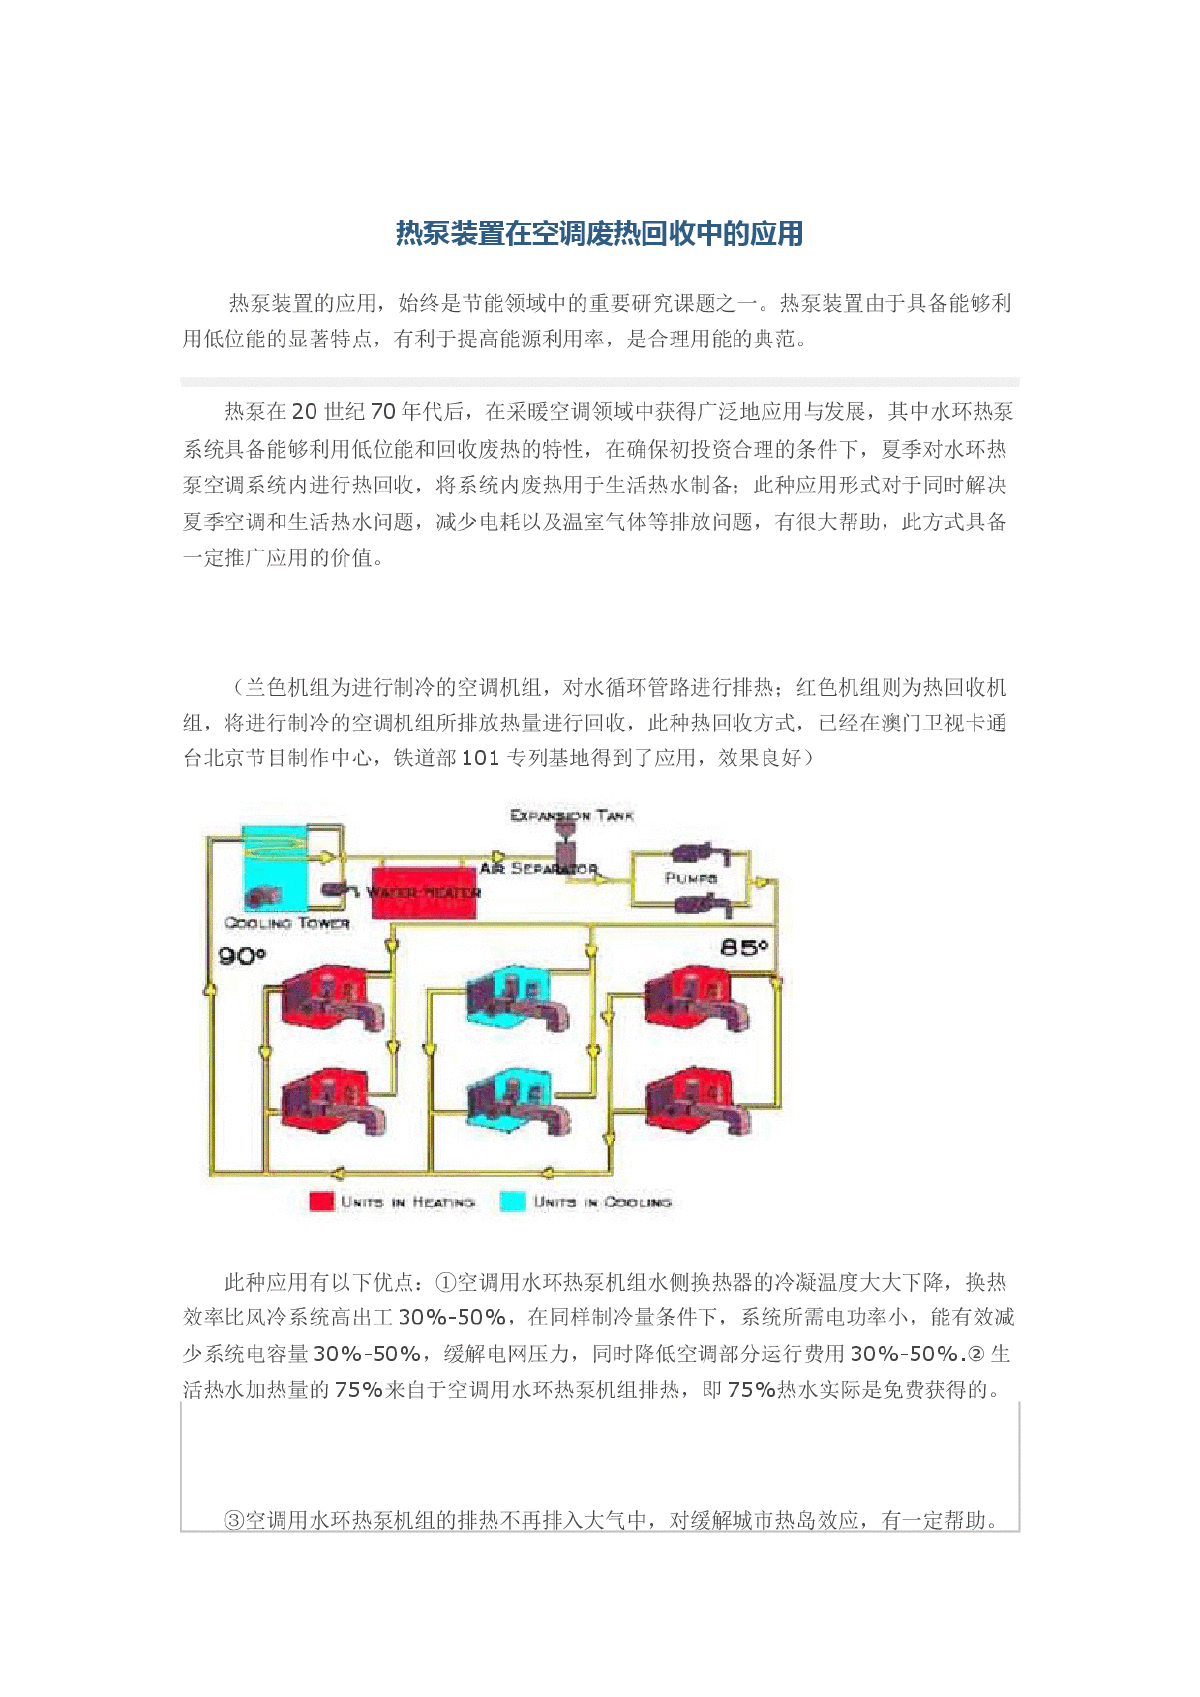 热泵装置在空调废热回收中的应用